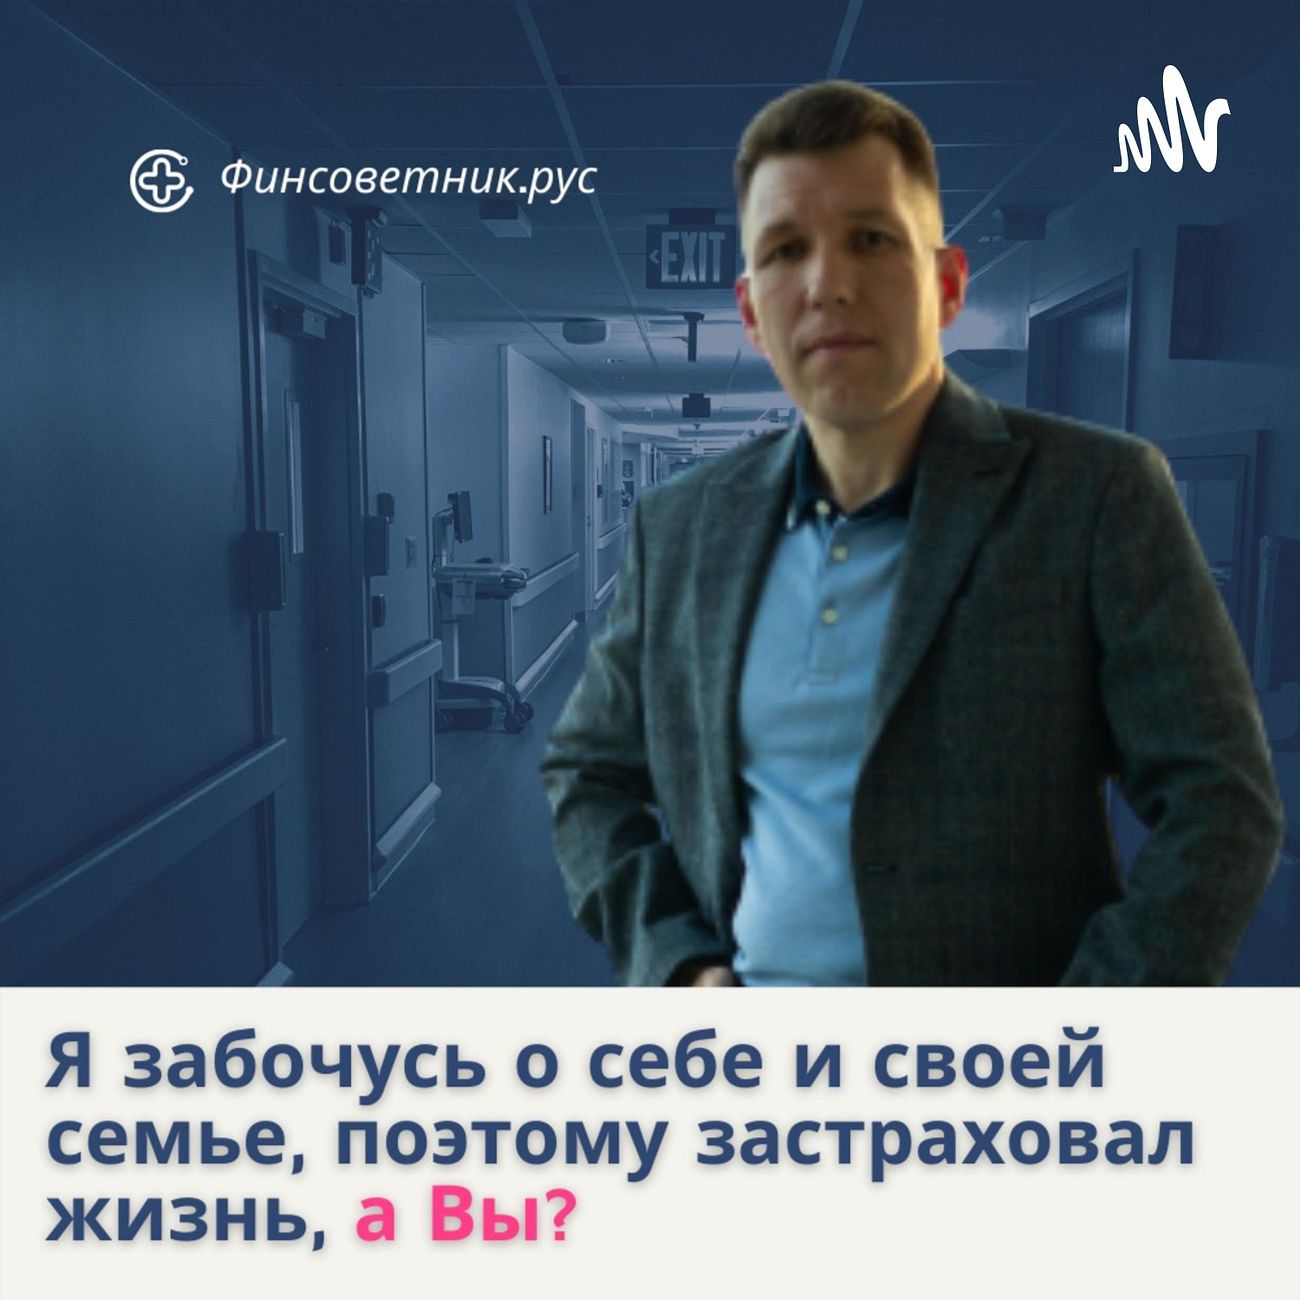 Финансовый советник и страховой агент Дмитрий Зайцев